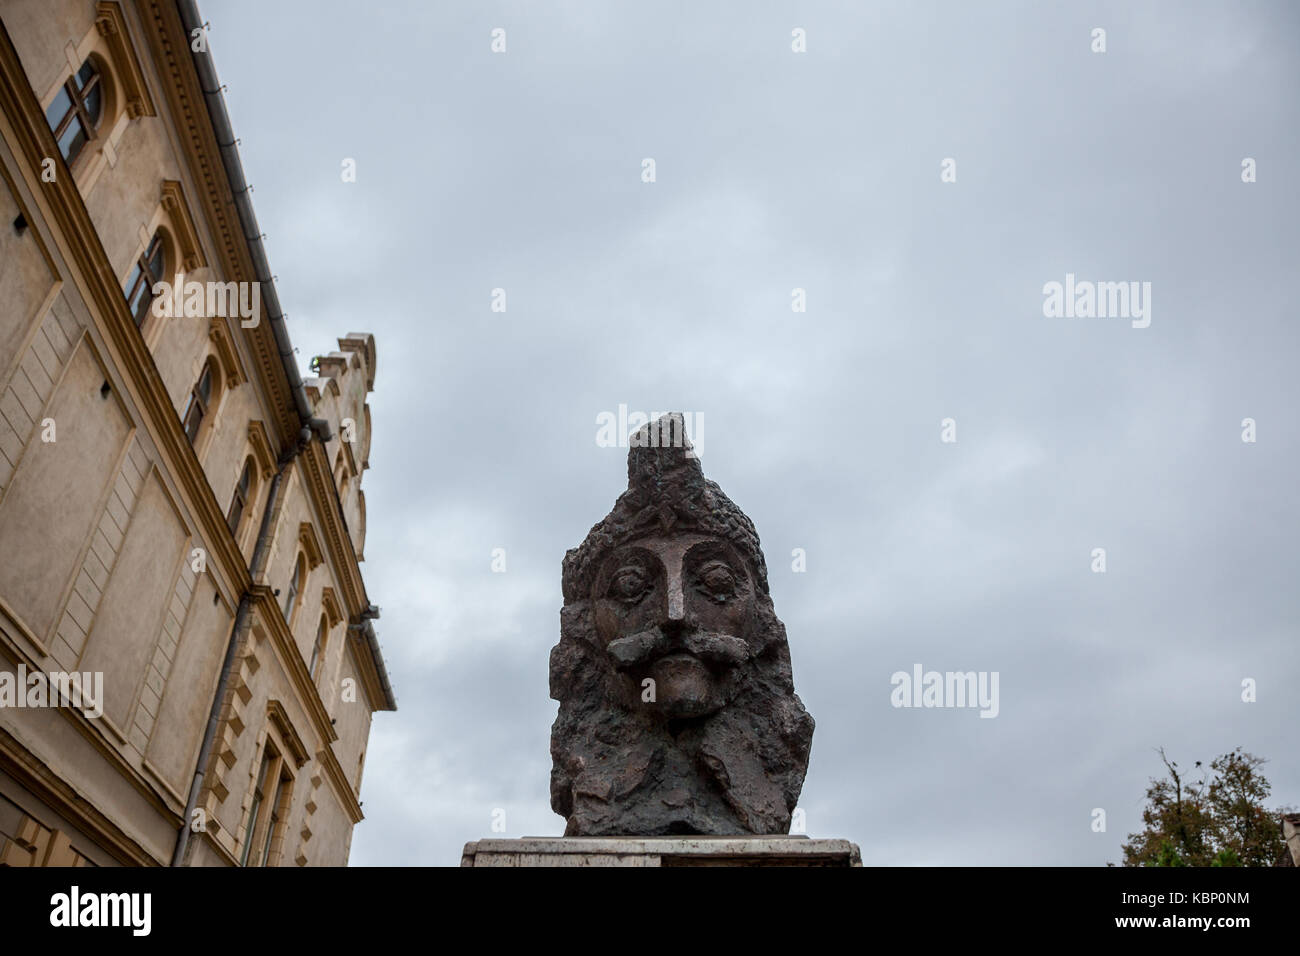 Sighisoara, Romania - 22 settembre 2017: Statua di Vlad Tepes, aka Vlad Dracul o dracula nella cittadella di sighisoara, dove egli era nato presumibilmente i Foto Stock